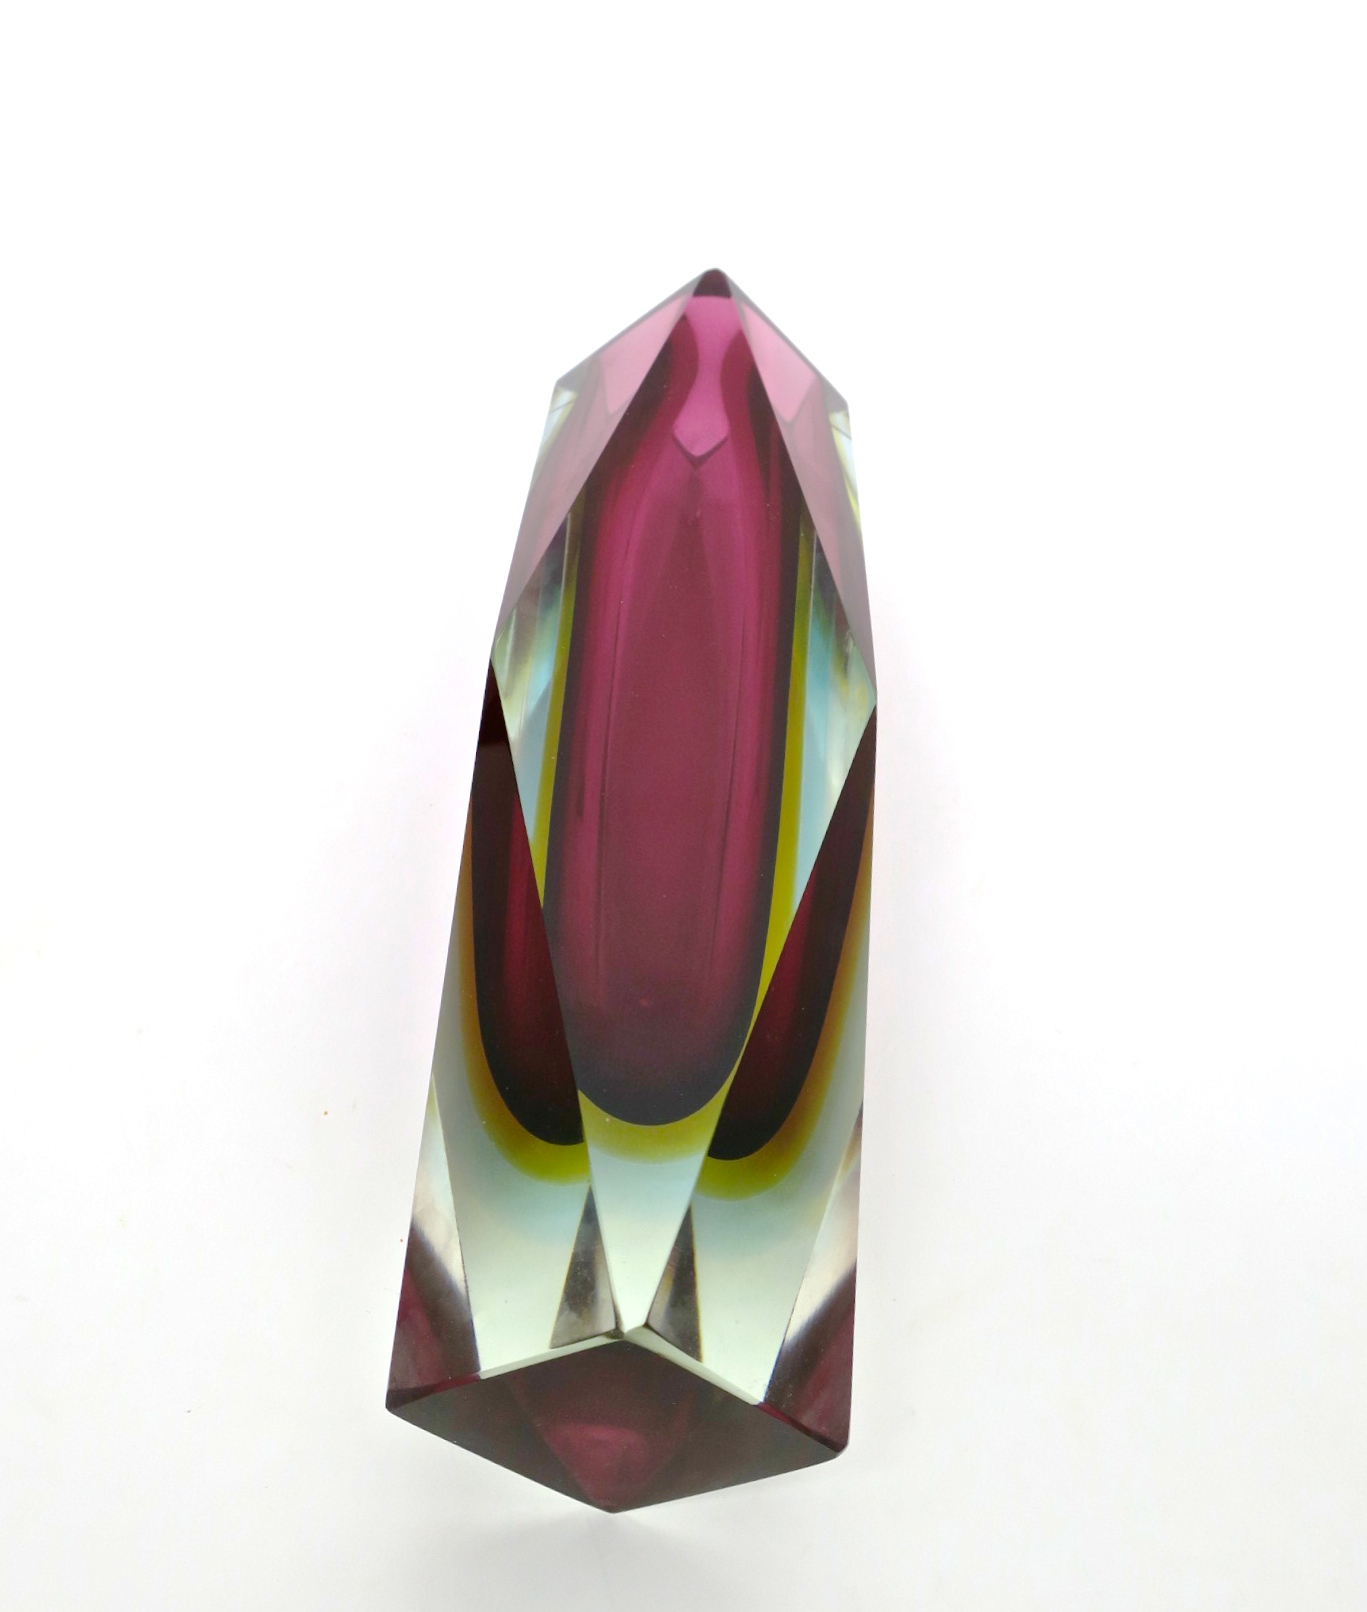 murano blockvase kristall mundgeblasen mouthblown handcrafted handgeschliffen feuerpoliert fire polished kristal crystal vase